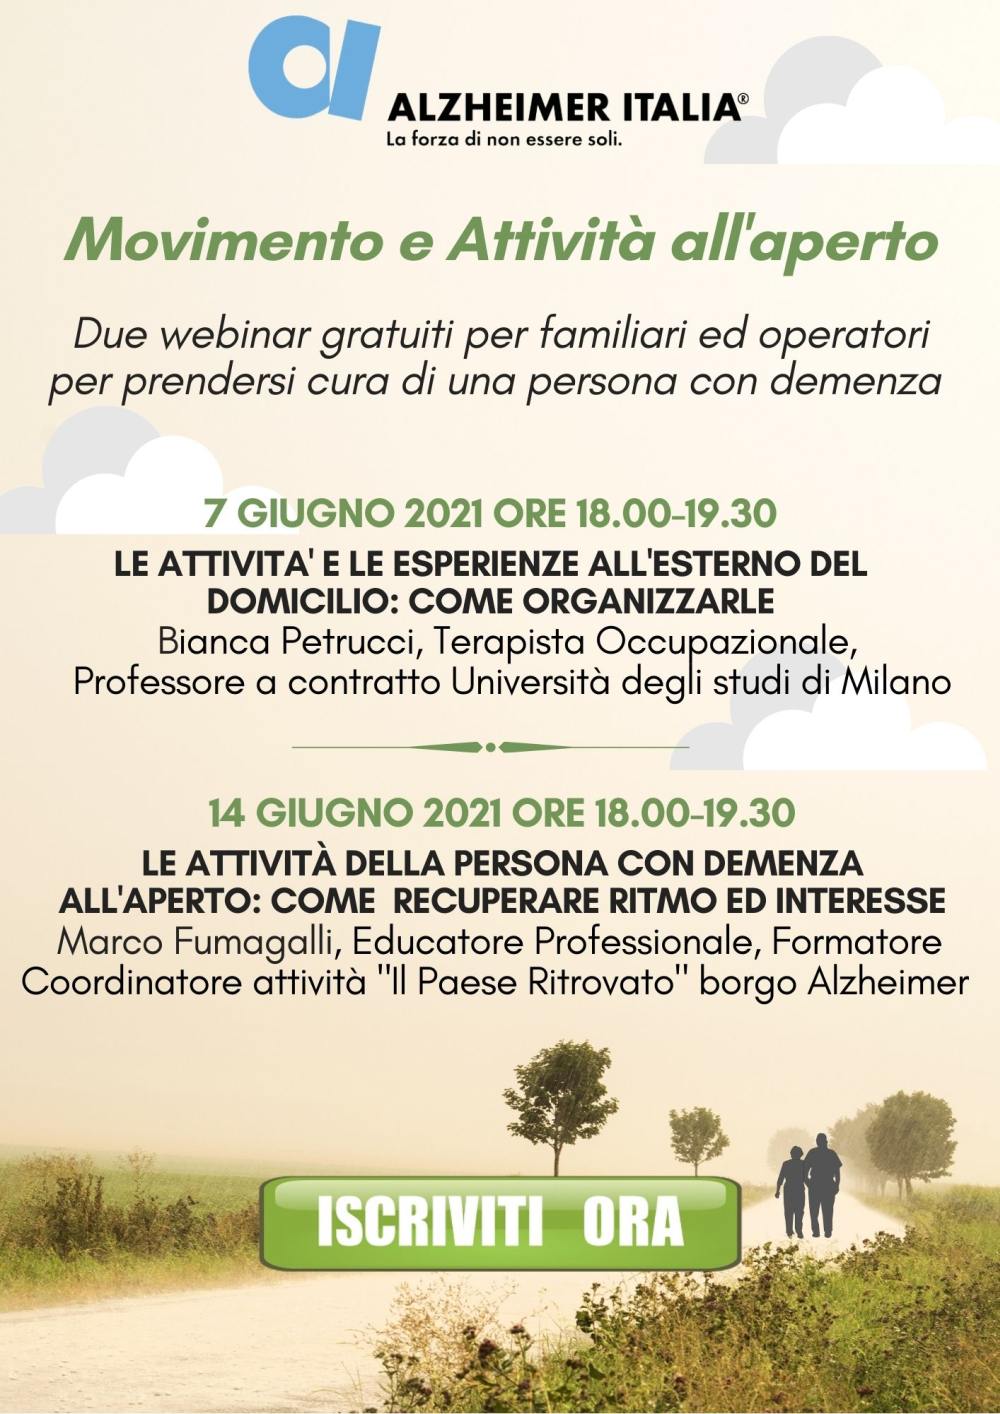 Alzheimer Italia - Federazione delle Associazioni Alzheimer d'Italia